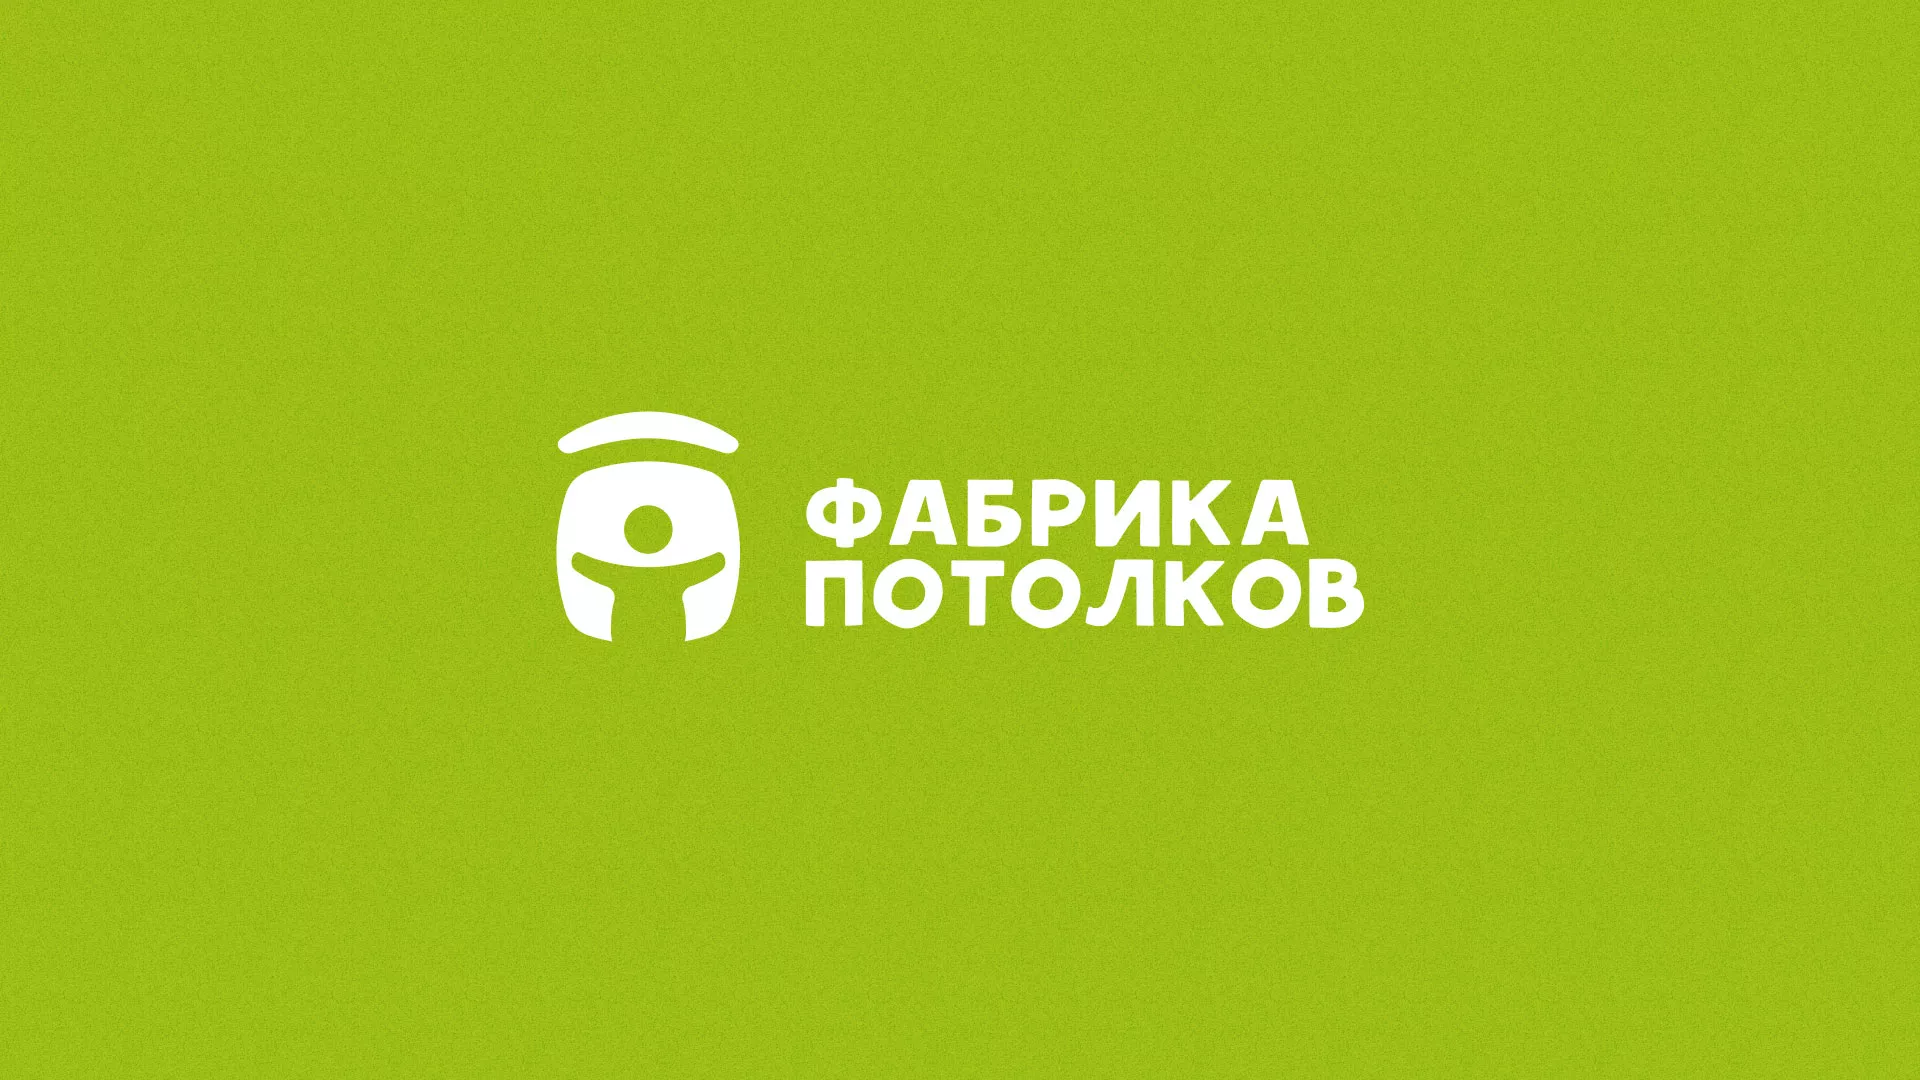 Разработка логотипа для производства натяжных потолков в Щиграх